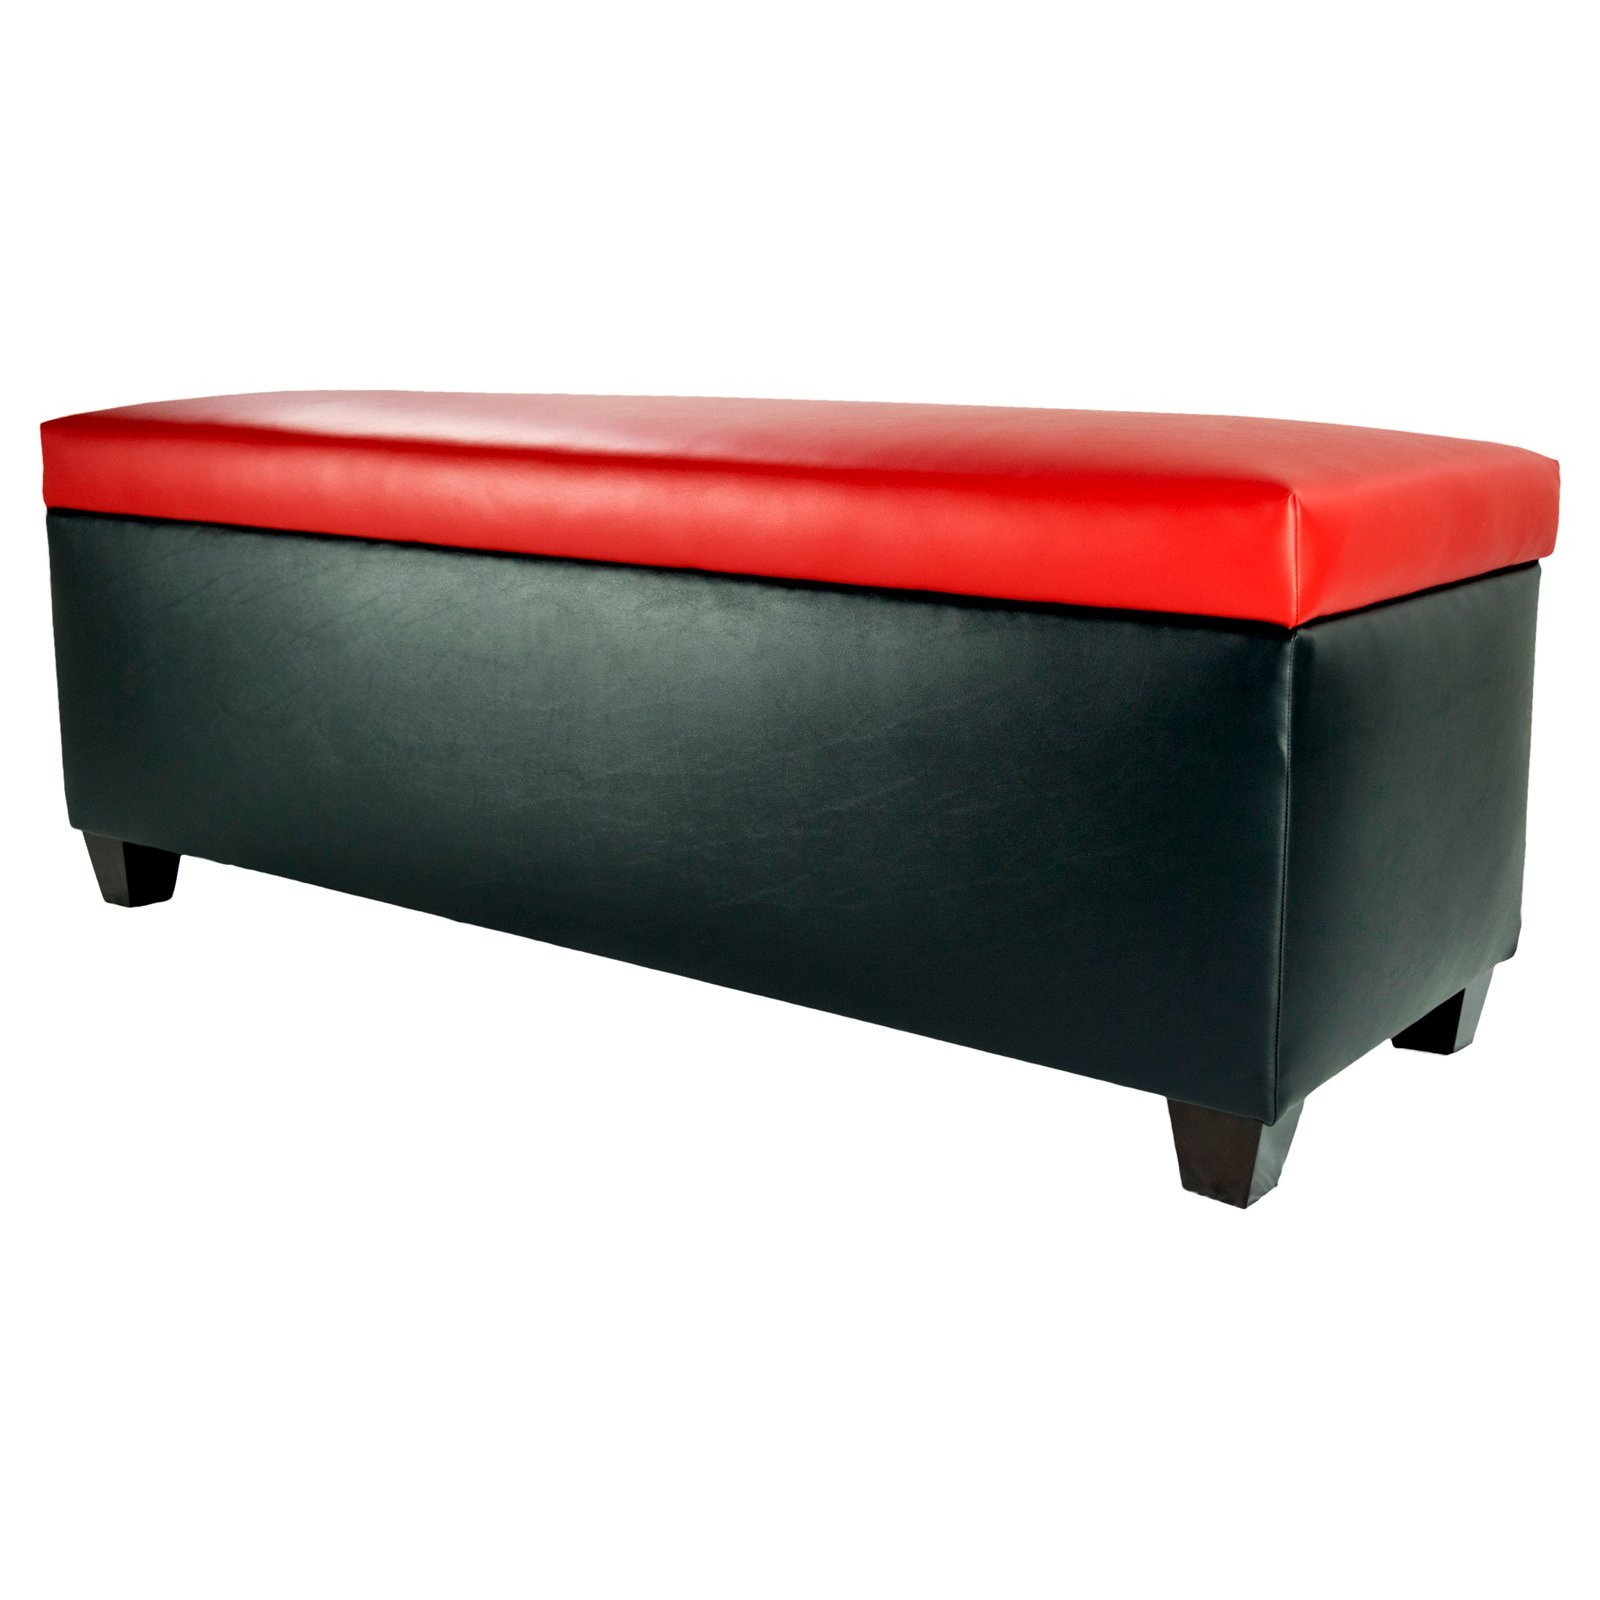 Secret Shoe Storage Bench
 MJL Furniture Designs The Sole Secret Shoe Storage Bench